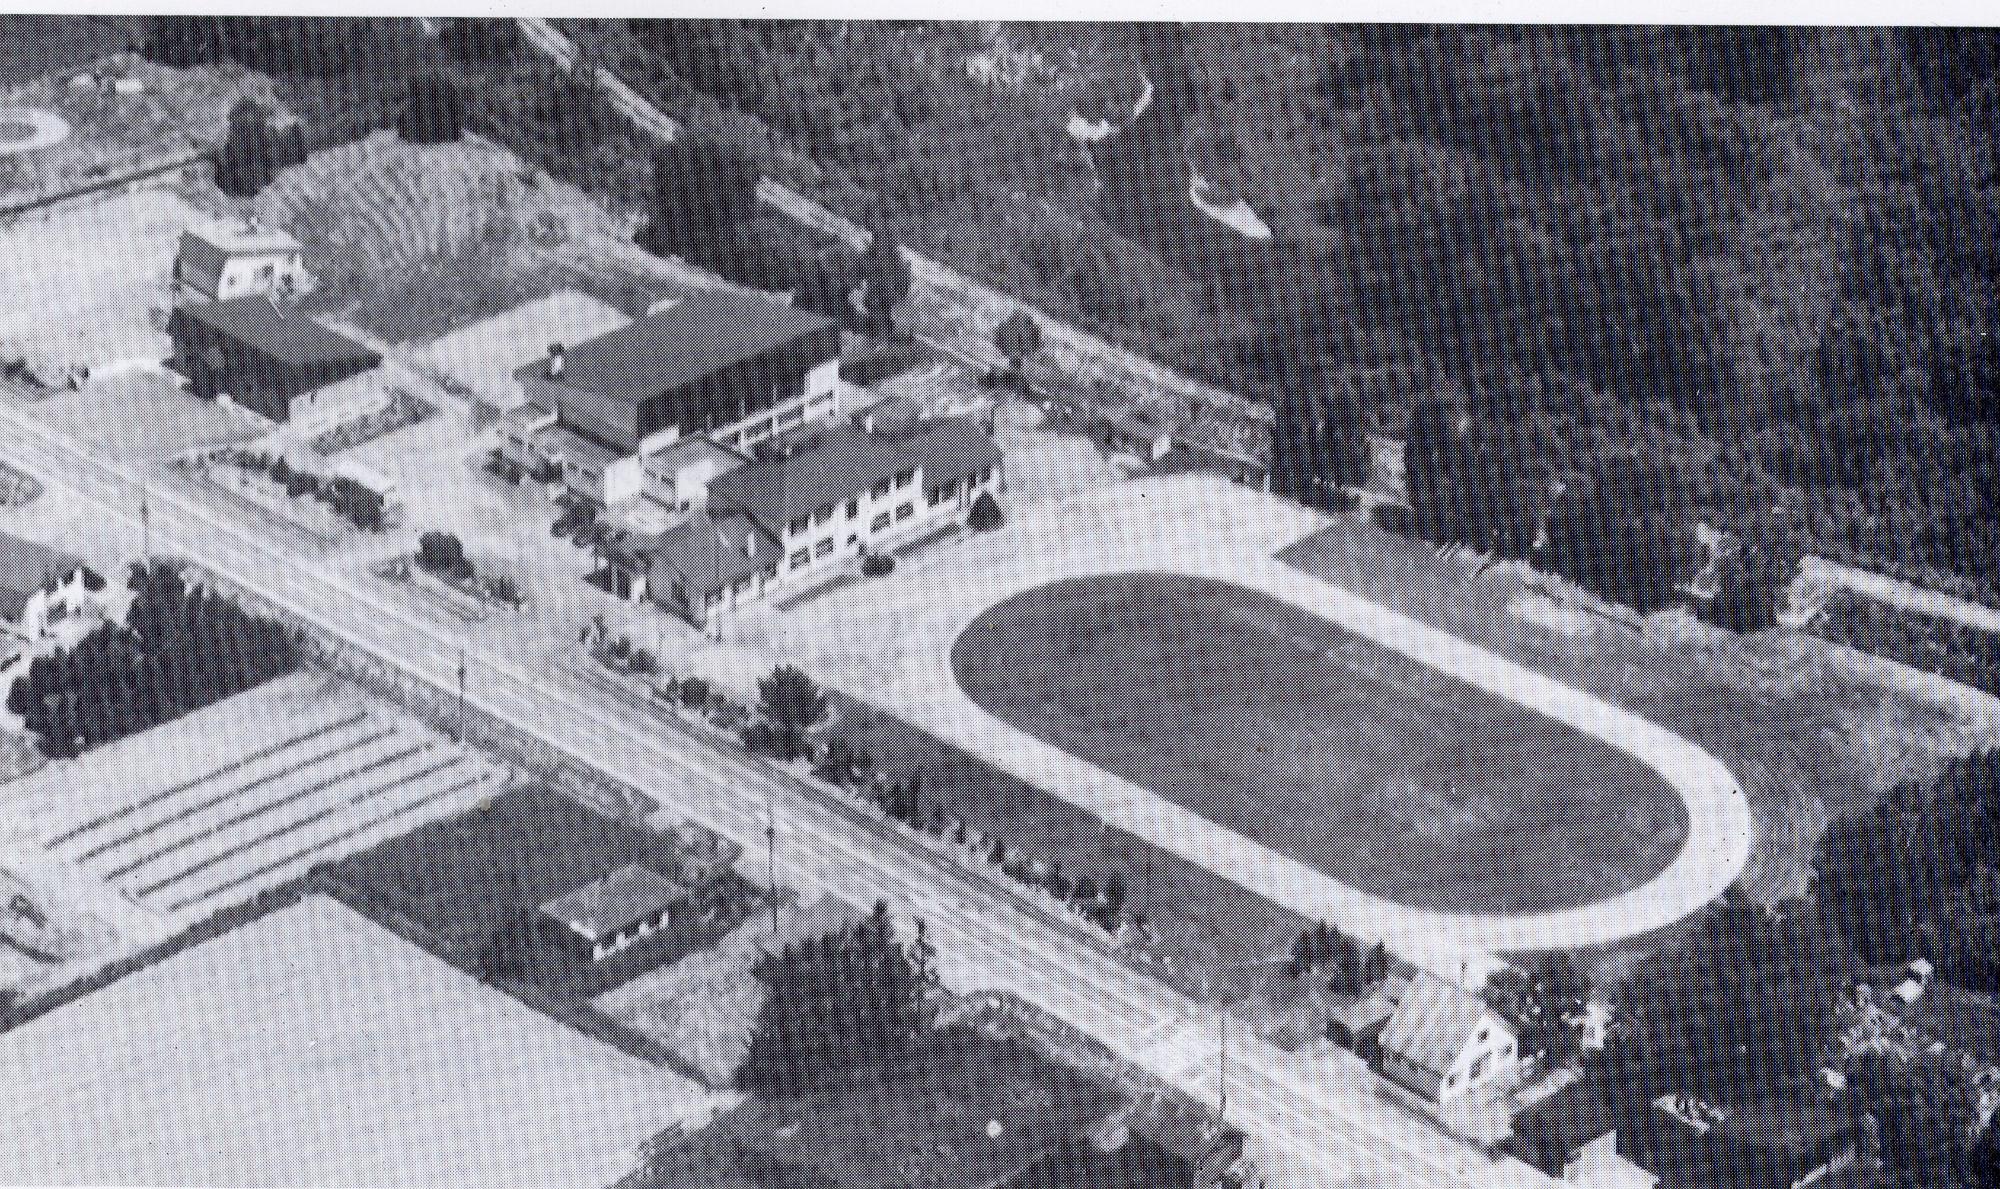 左側に校舎が建ち右側に校庭のある旧白山小学校校舎を上空から撮影した白黒写真